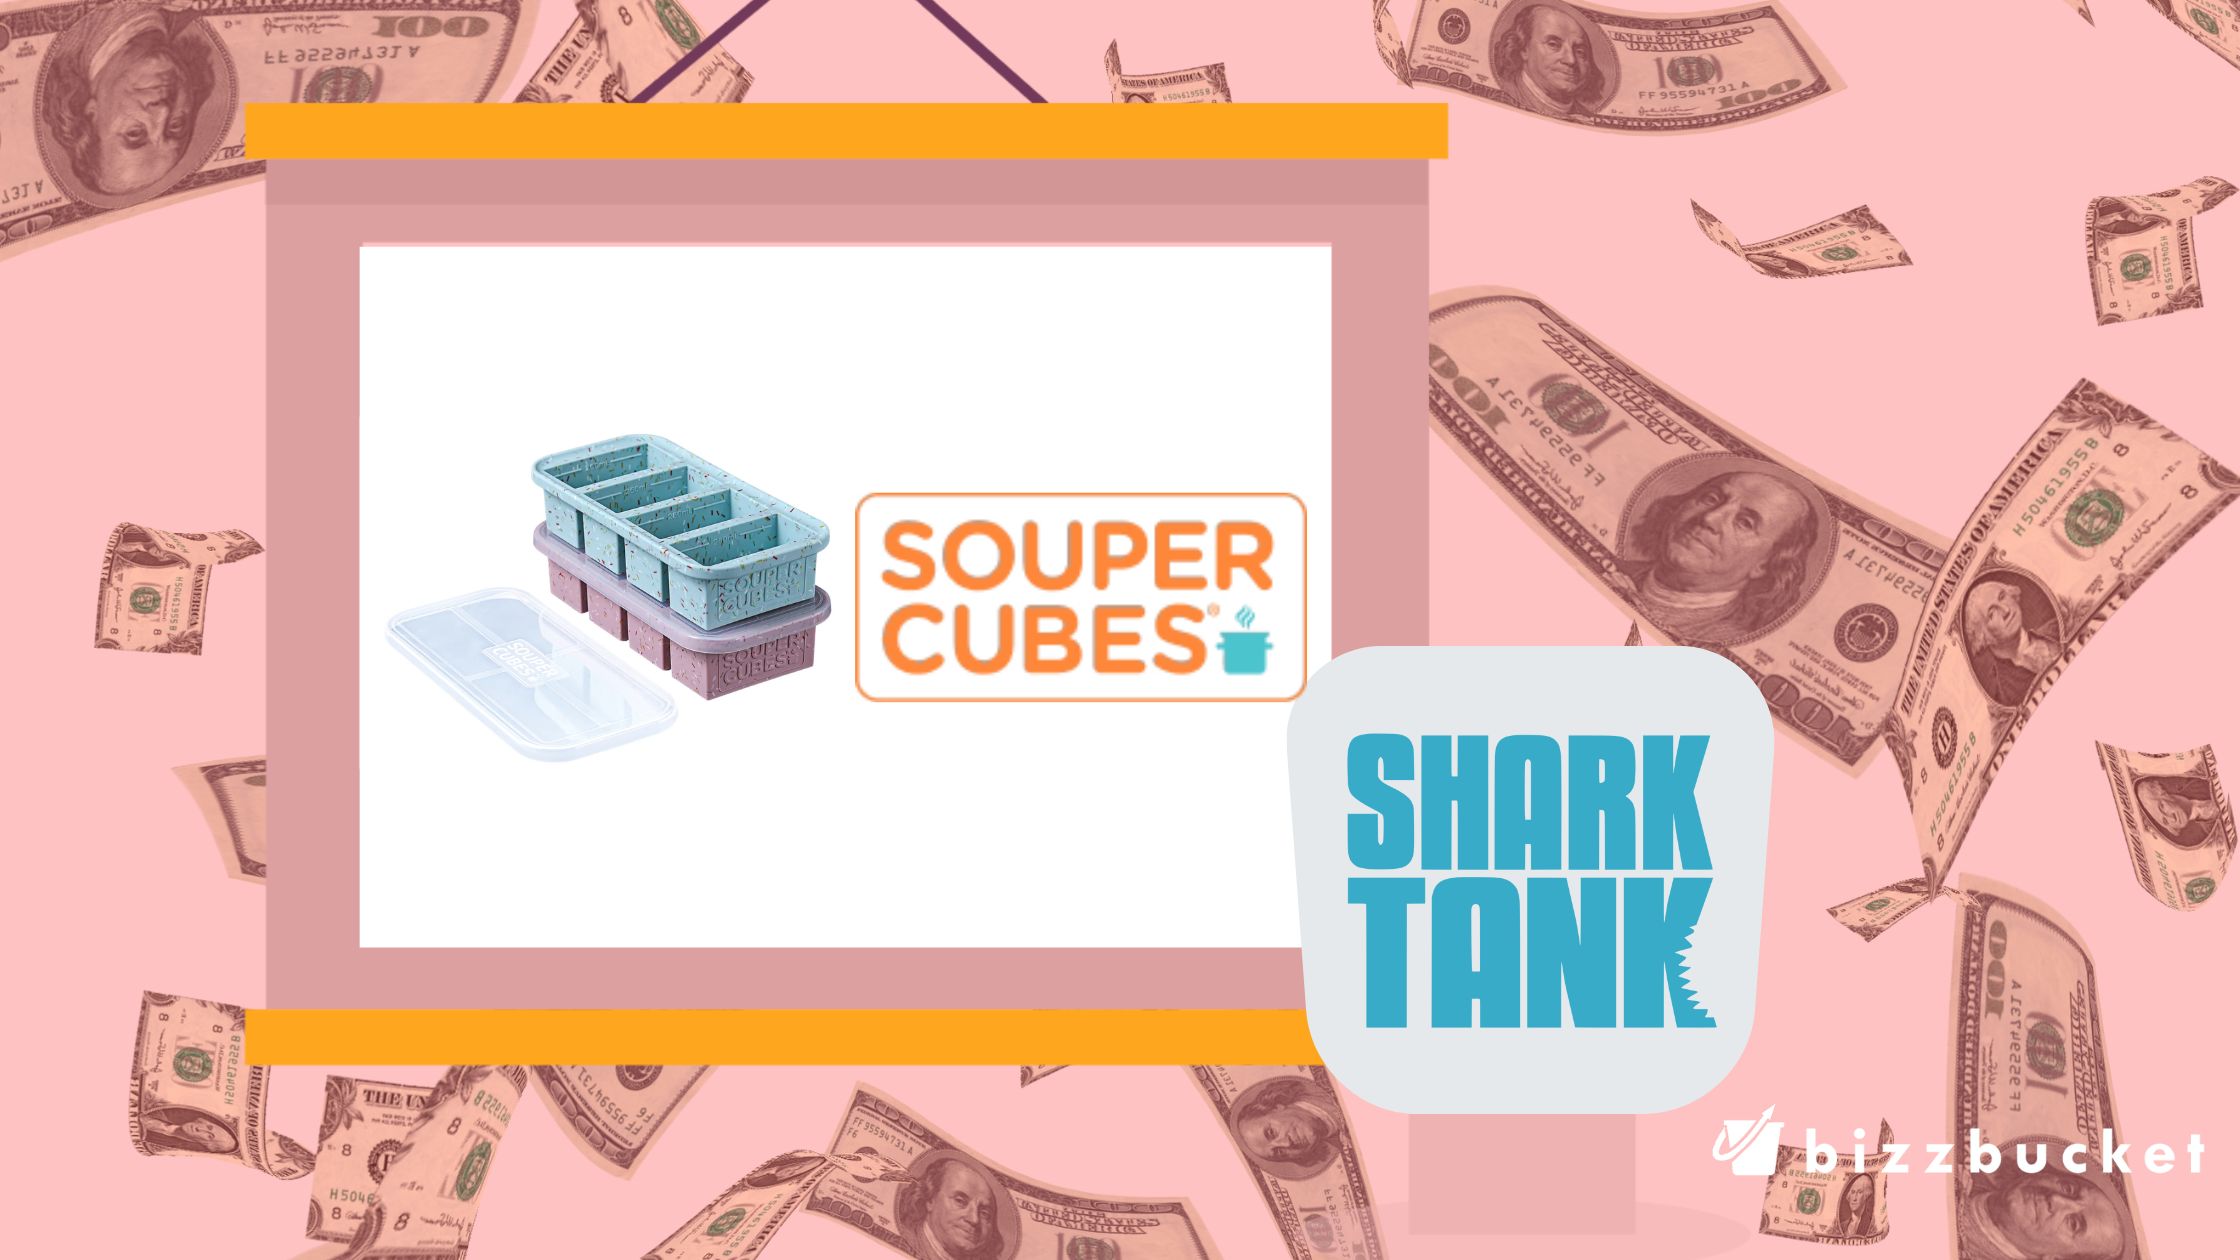 Souper Cubes shark tank update